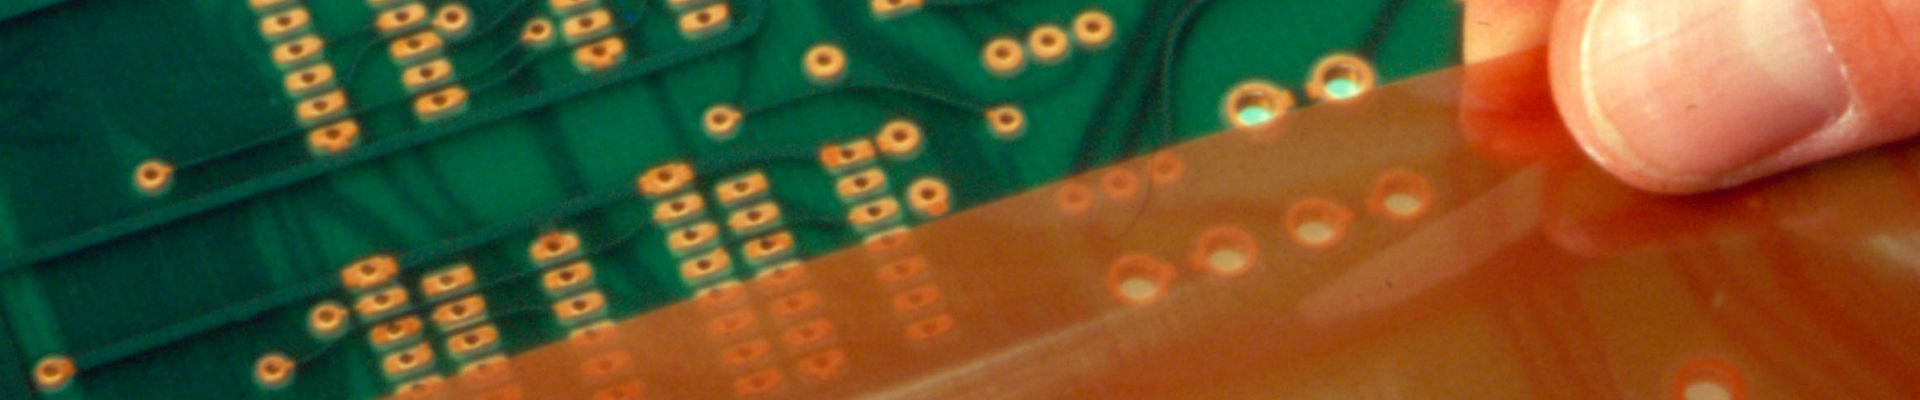 Los dedos del hombre aplican una película protectora adhesiva sensible a la presión a una tarjeta de circuito electrónico. 